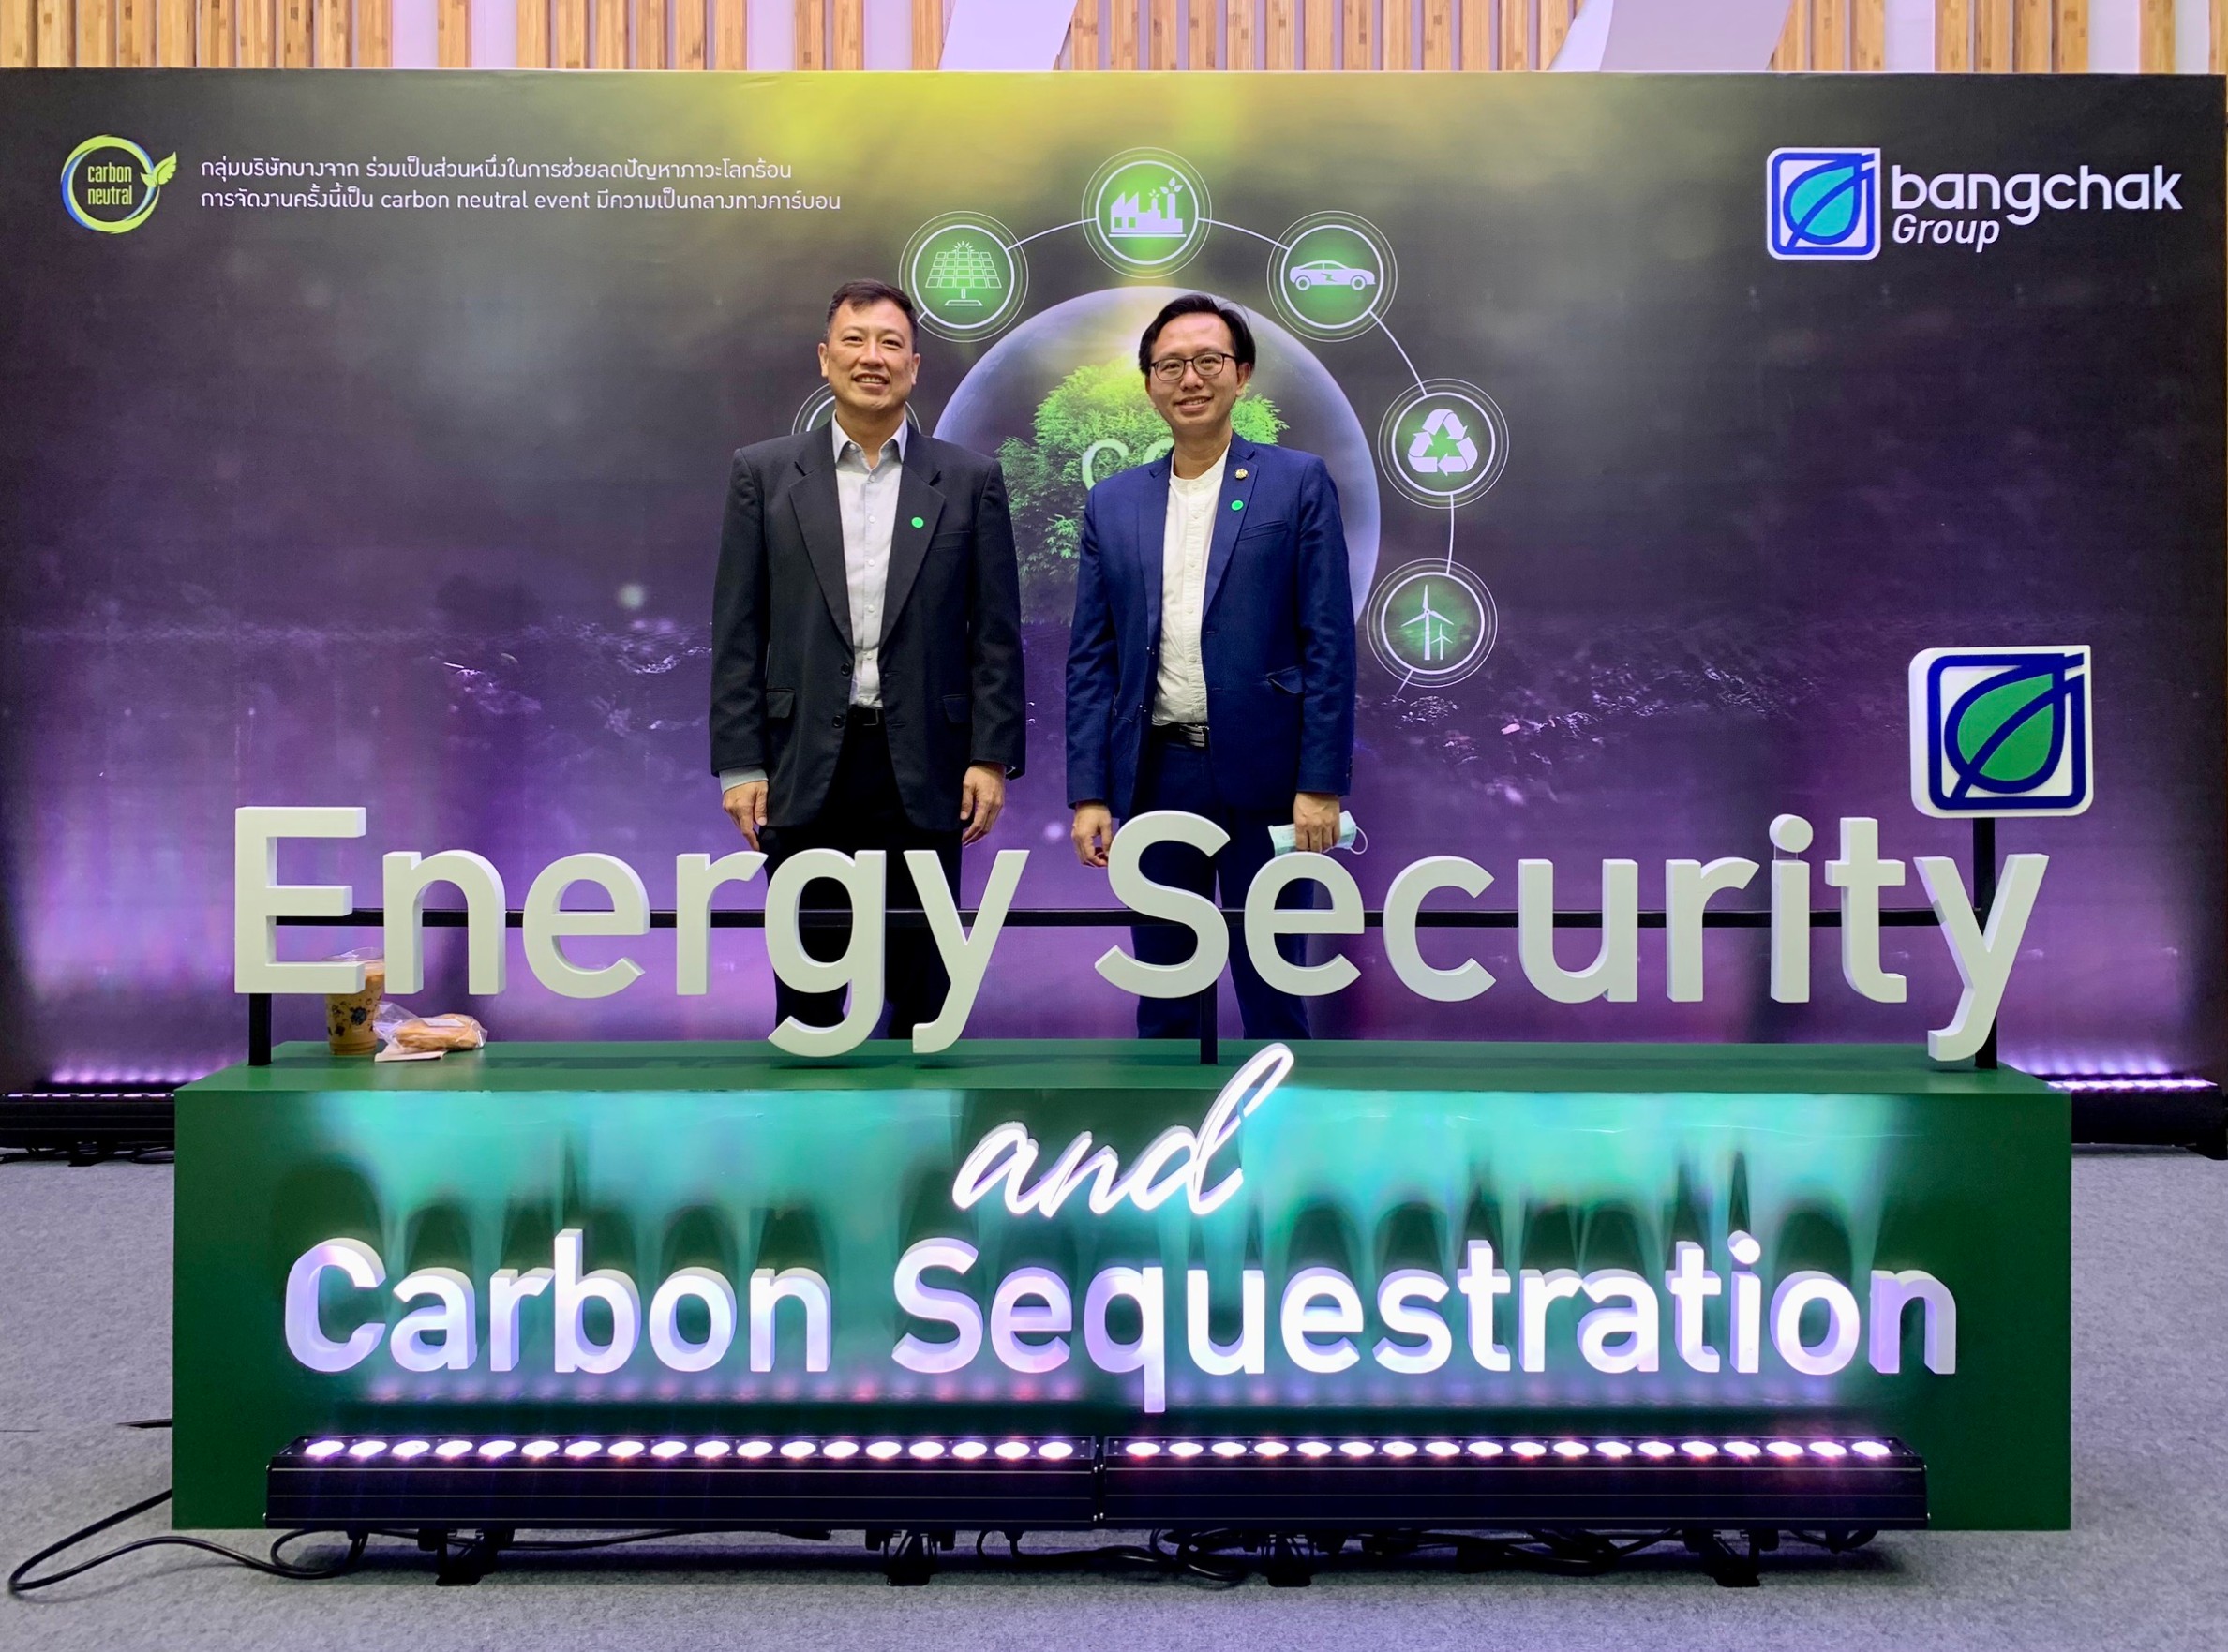 ดอยคำ ร่วมสัมมนา "Energy Security and Carbon Sequestration" รับฟังประเด็นความมั่นคงด้านพลังงานระดับโลก มุ่งสู่เป้าหมาย Net Zero อย่างยั่งยืน